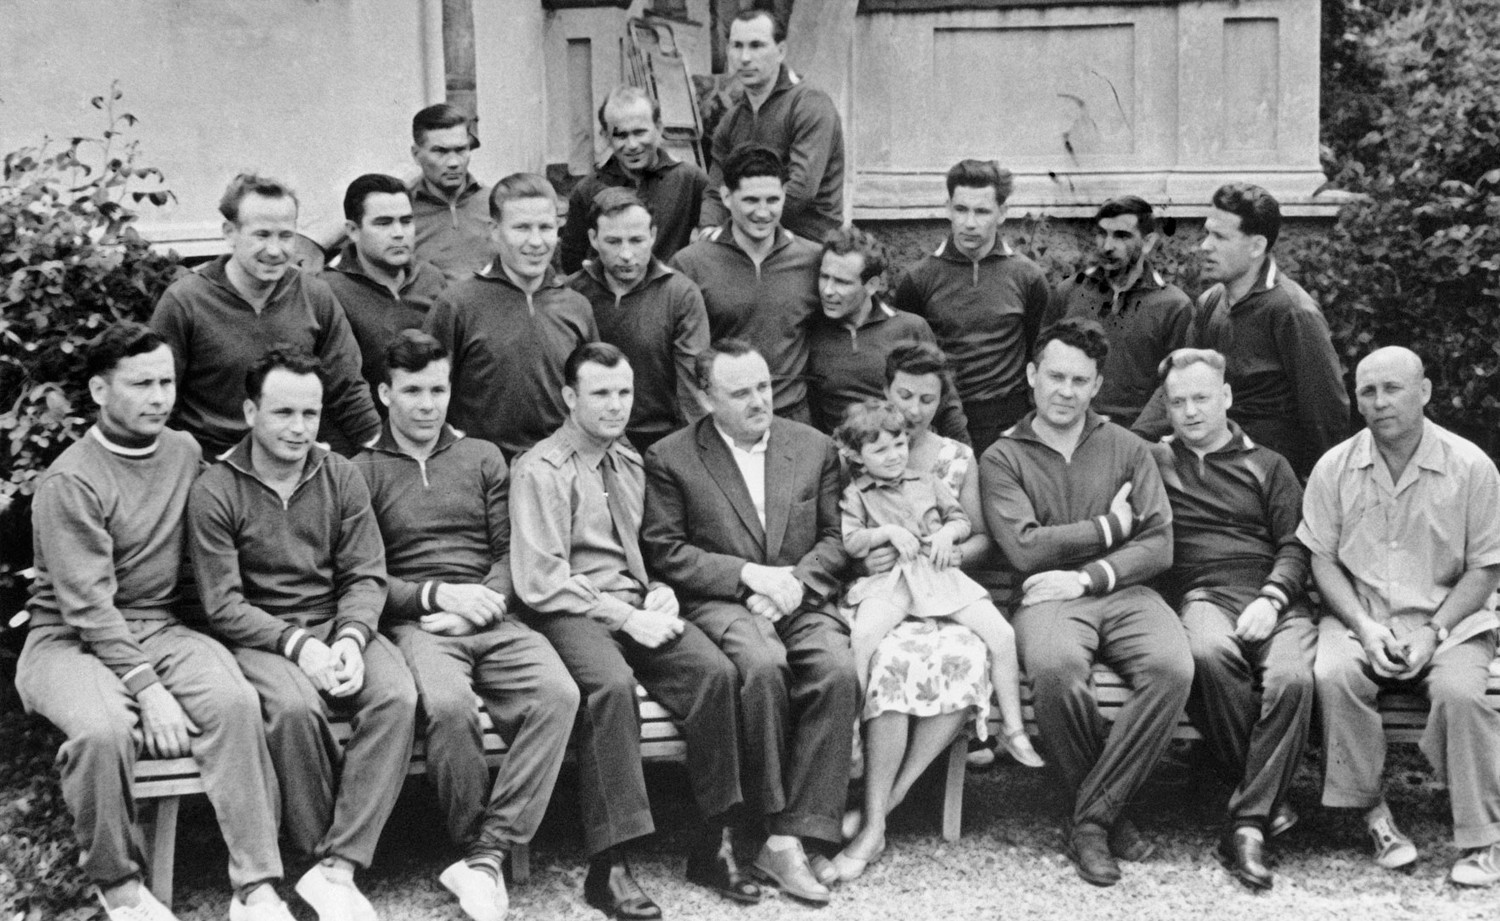 Горбатко нүүрний эгнээнд зүүн гар талаас хоёрт, харин Юрий Гагарин эхний эгнээнд Зөвлөлтийн сансрын хөтөлбөрийг удирдаж байсан Сергей Королевийн хажууд суужээ